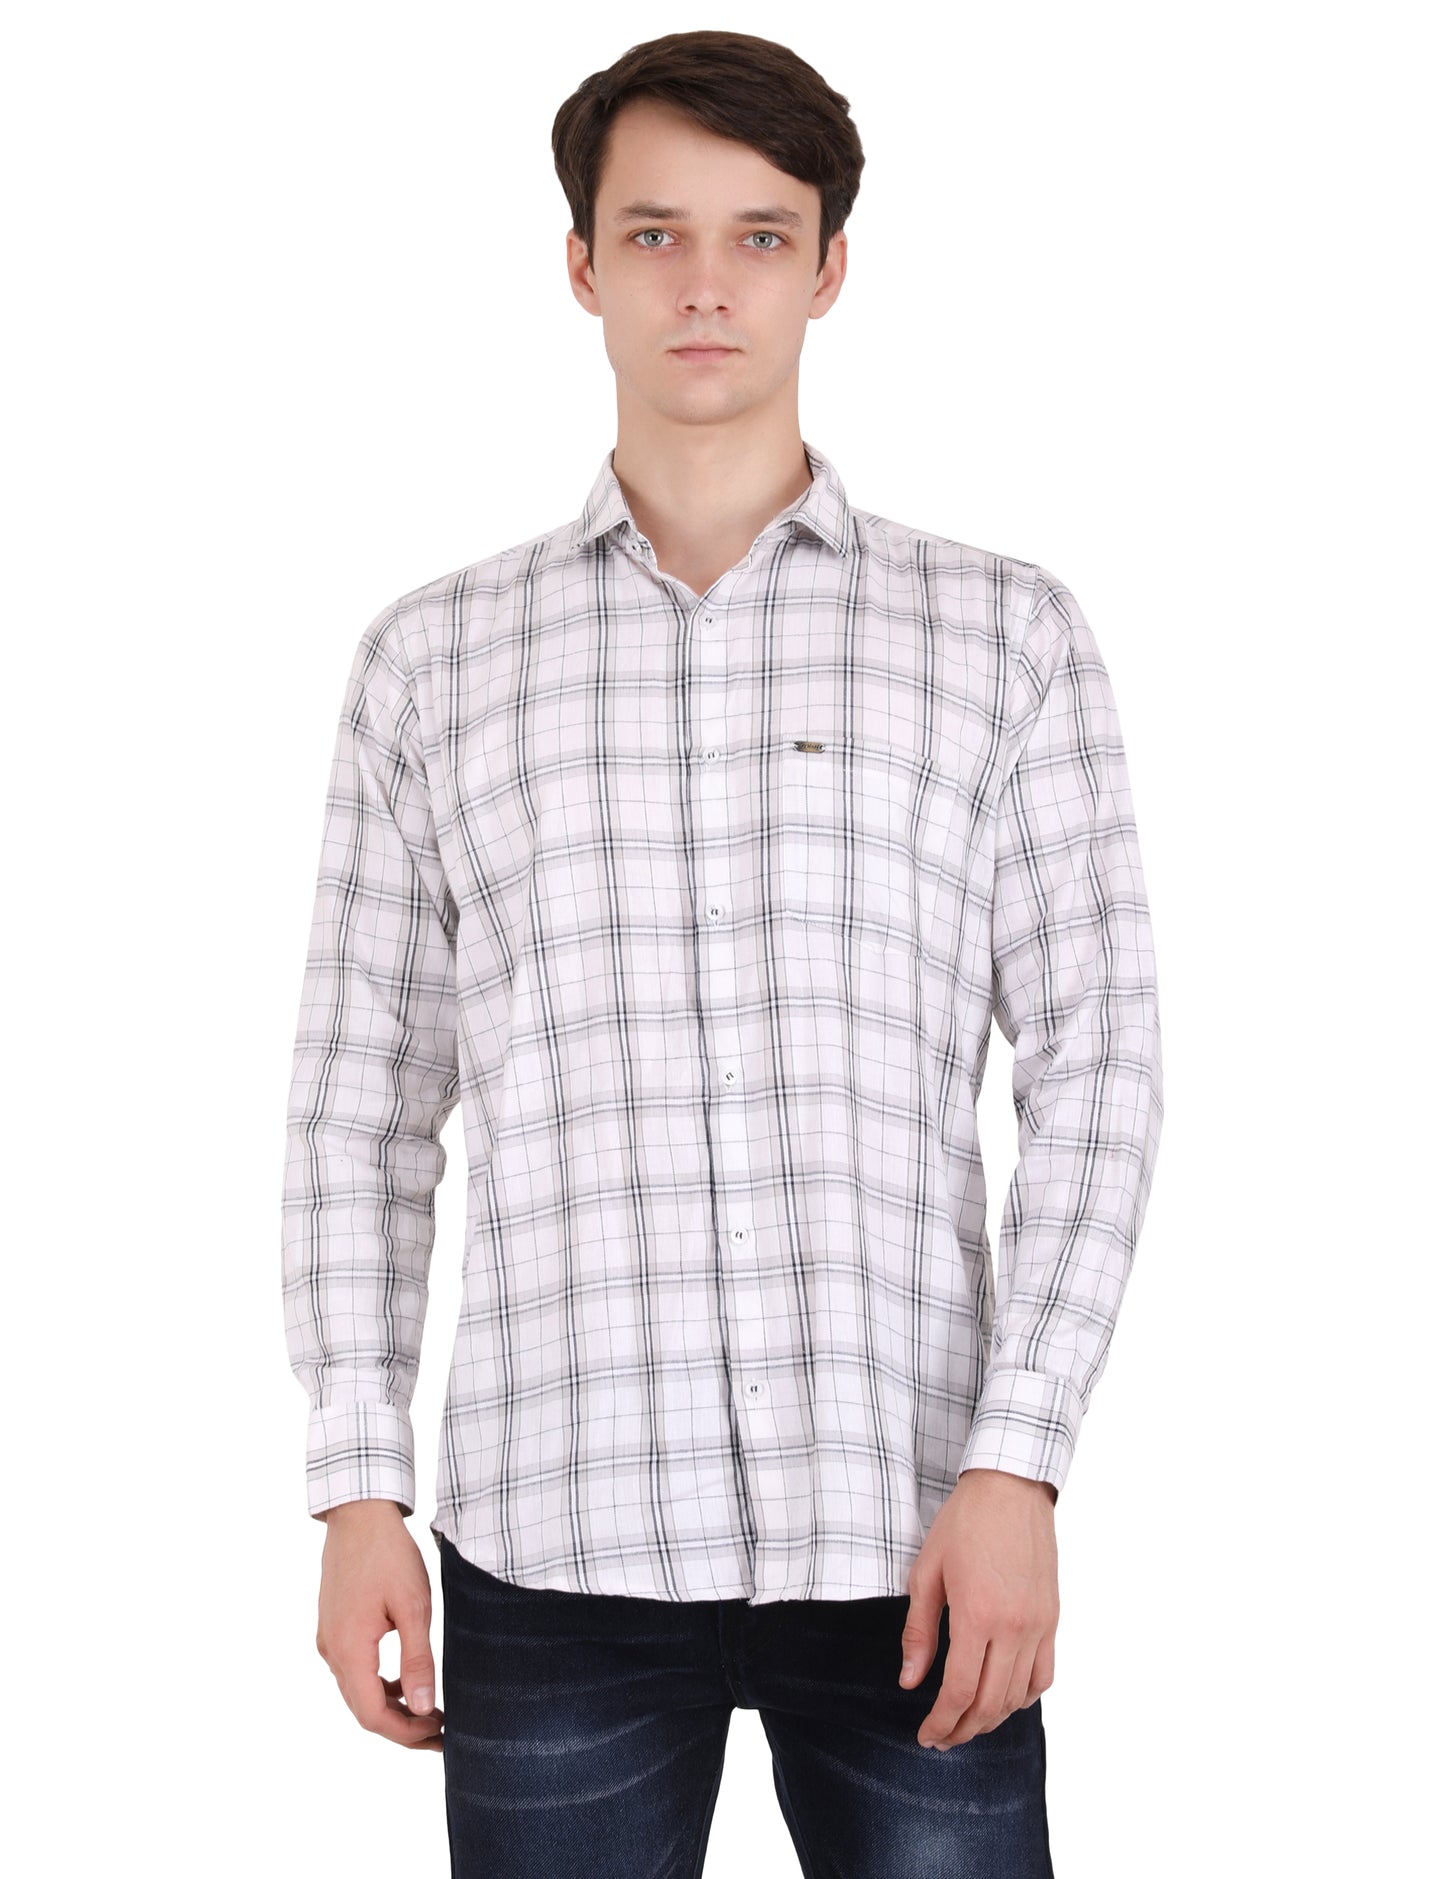 Classic Checkered Elegance: Timeless White Shirt for Men